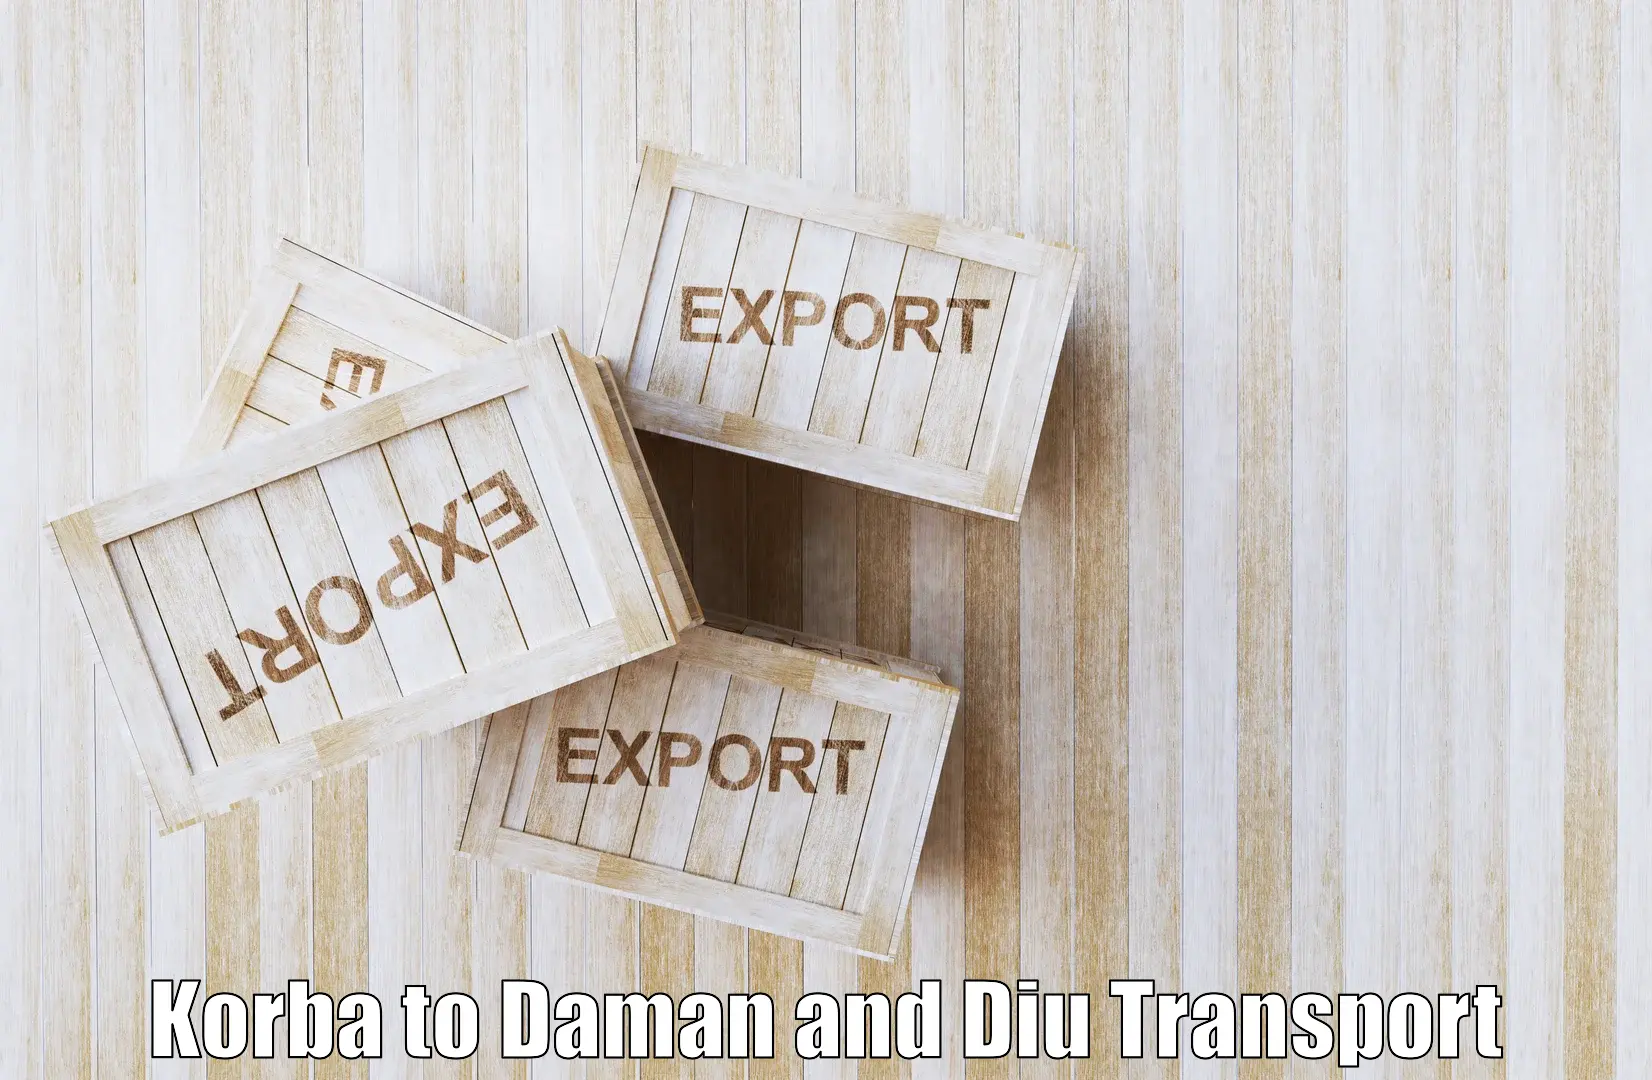 Transport services Korba to Daman and Diu